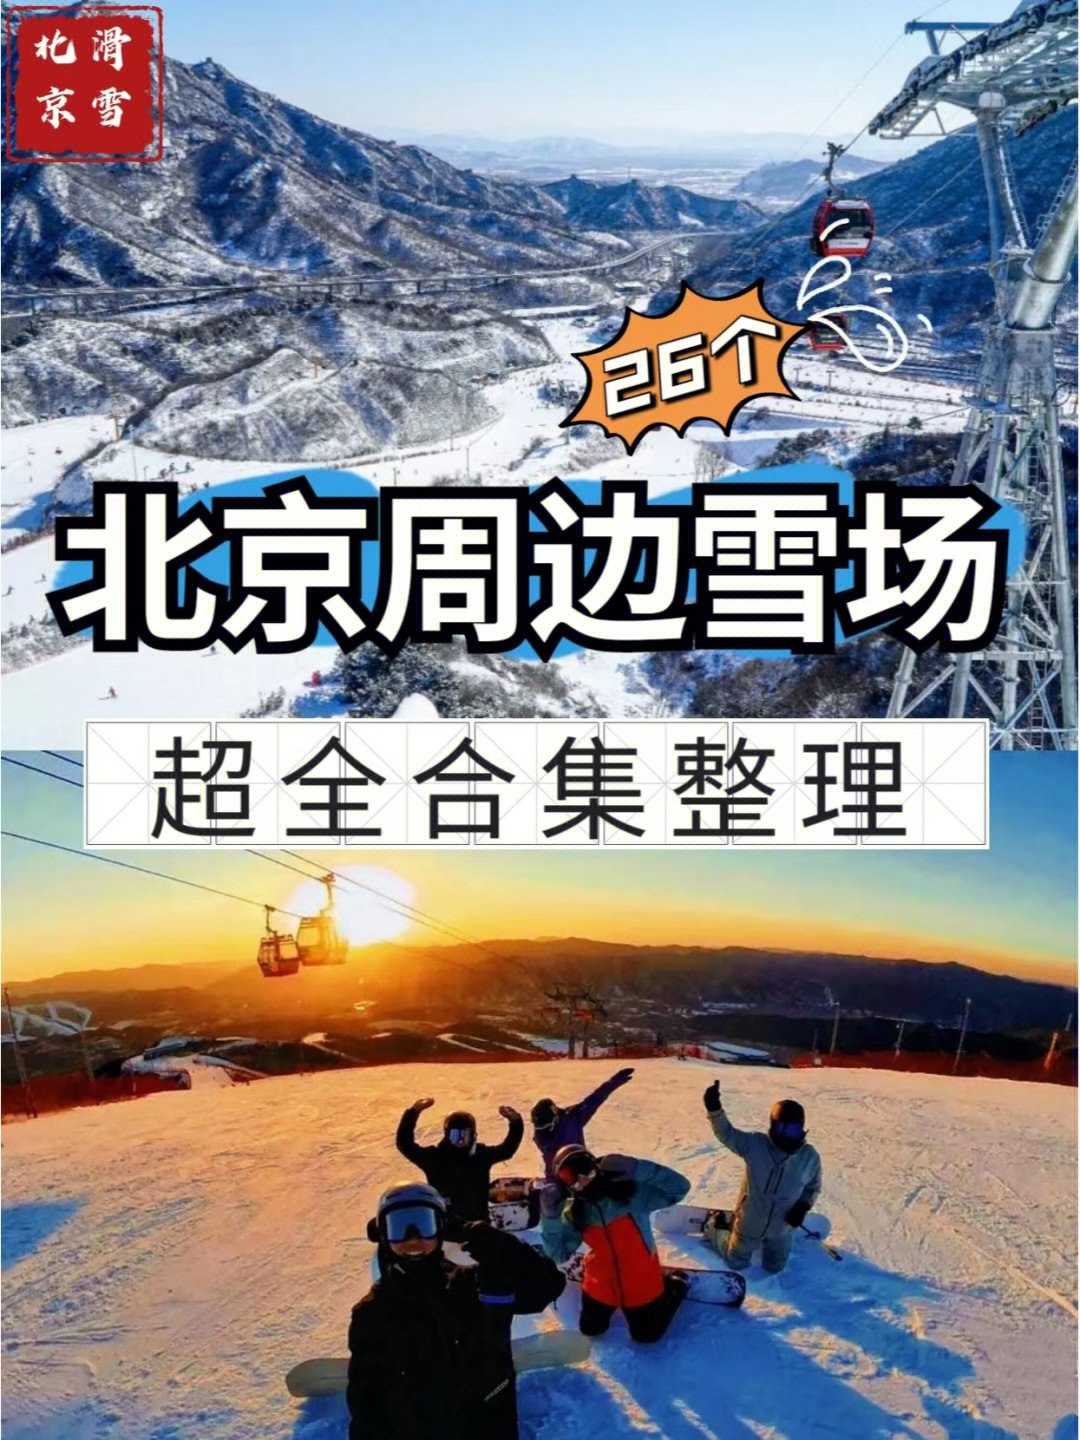 吐血整理北京周边26个滑雪场合集